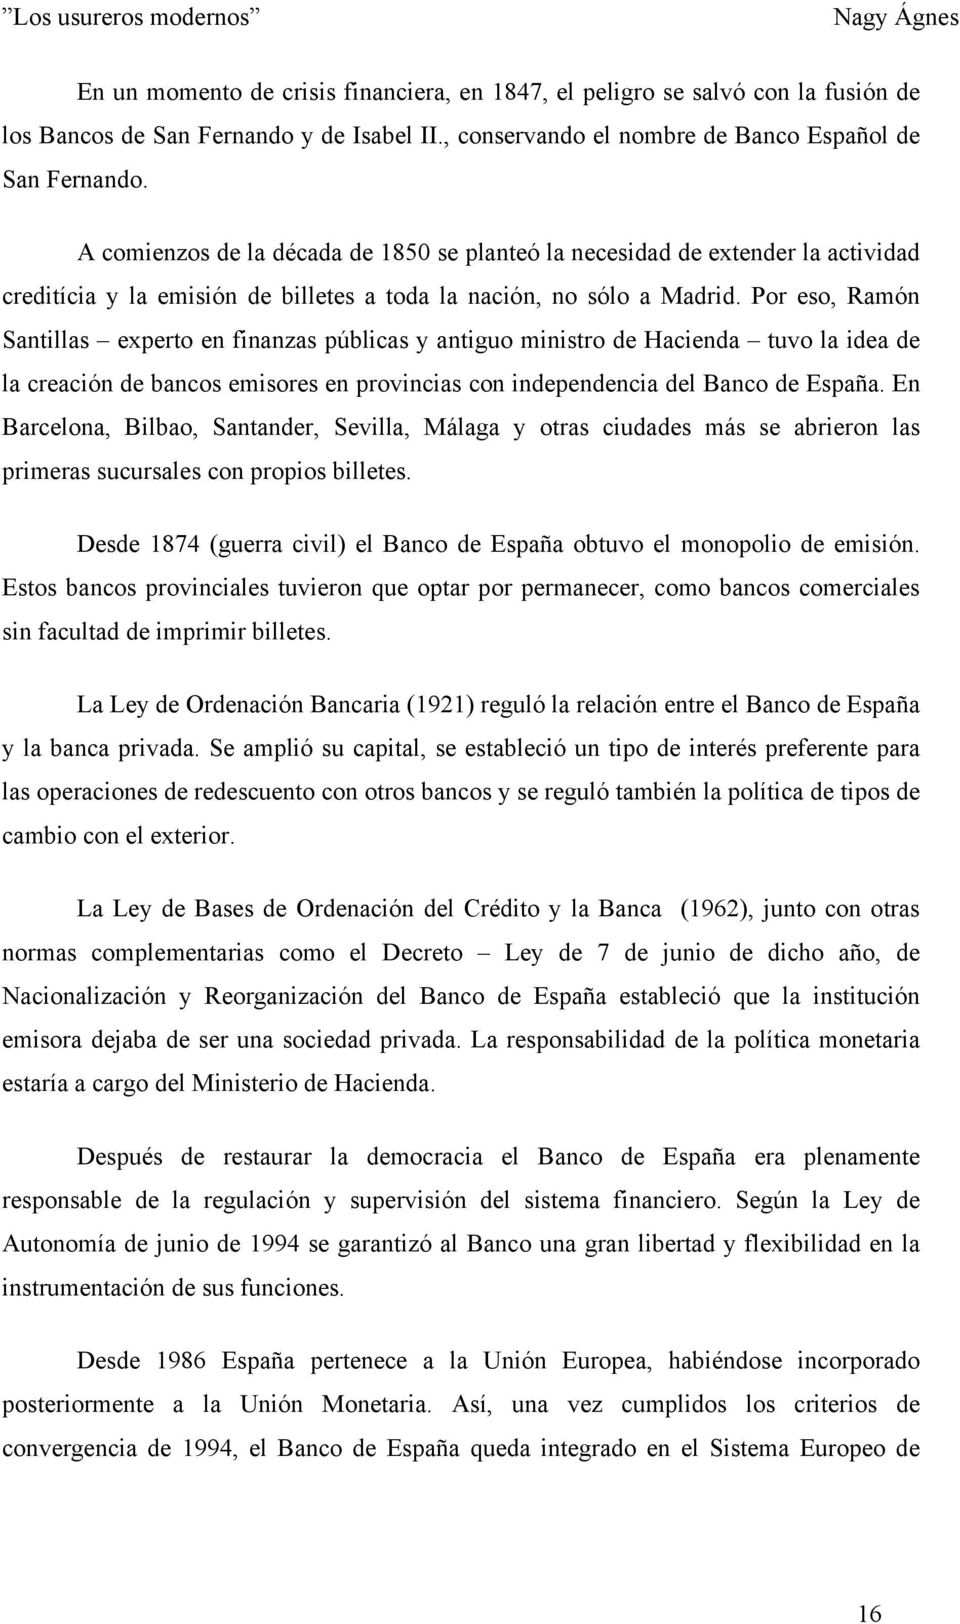 Por eso, Ramón Santillas experto en finanzas públicas y antiguo ministro de Hacienda tuvo la idea de la creación de bancos emisores en provincias con independencia del Banco de España.